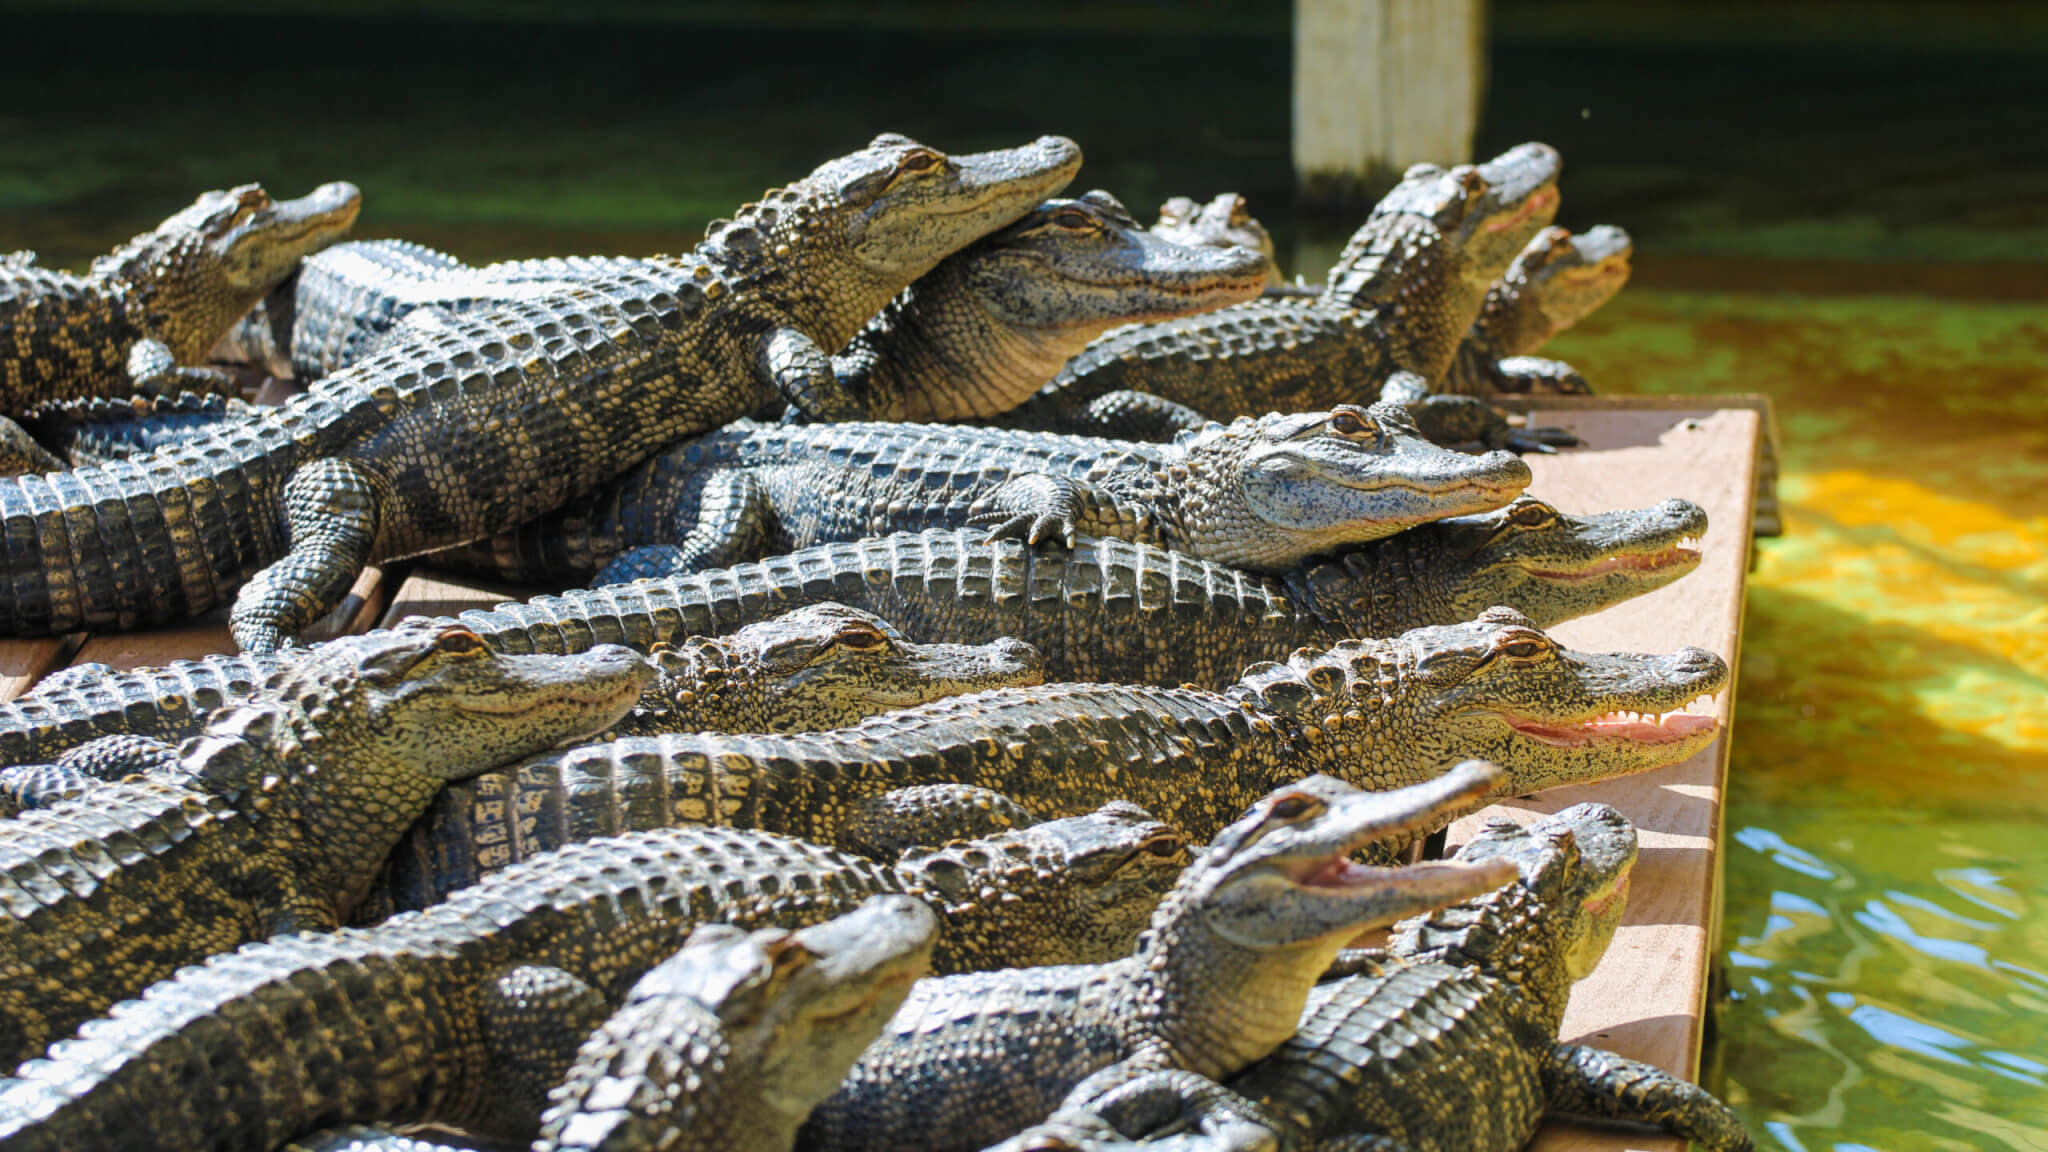 Alligators at a sanctuary / farm